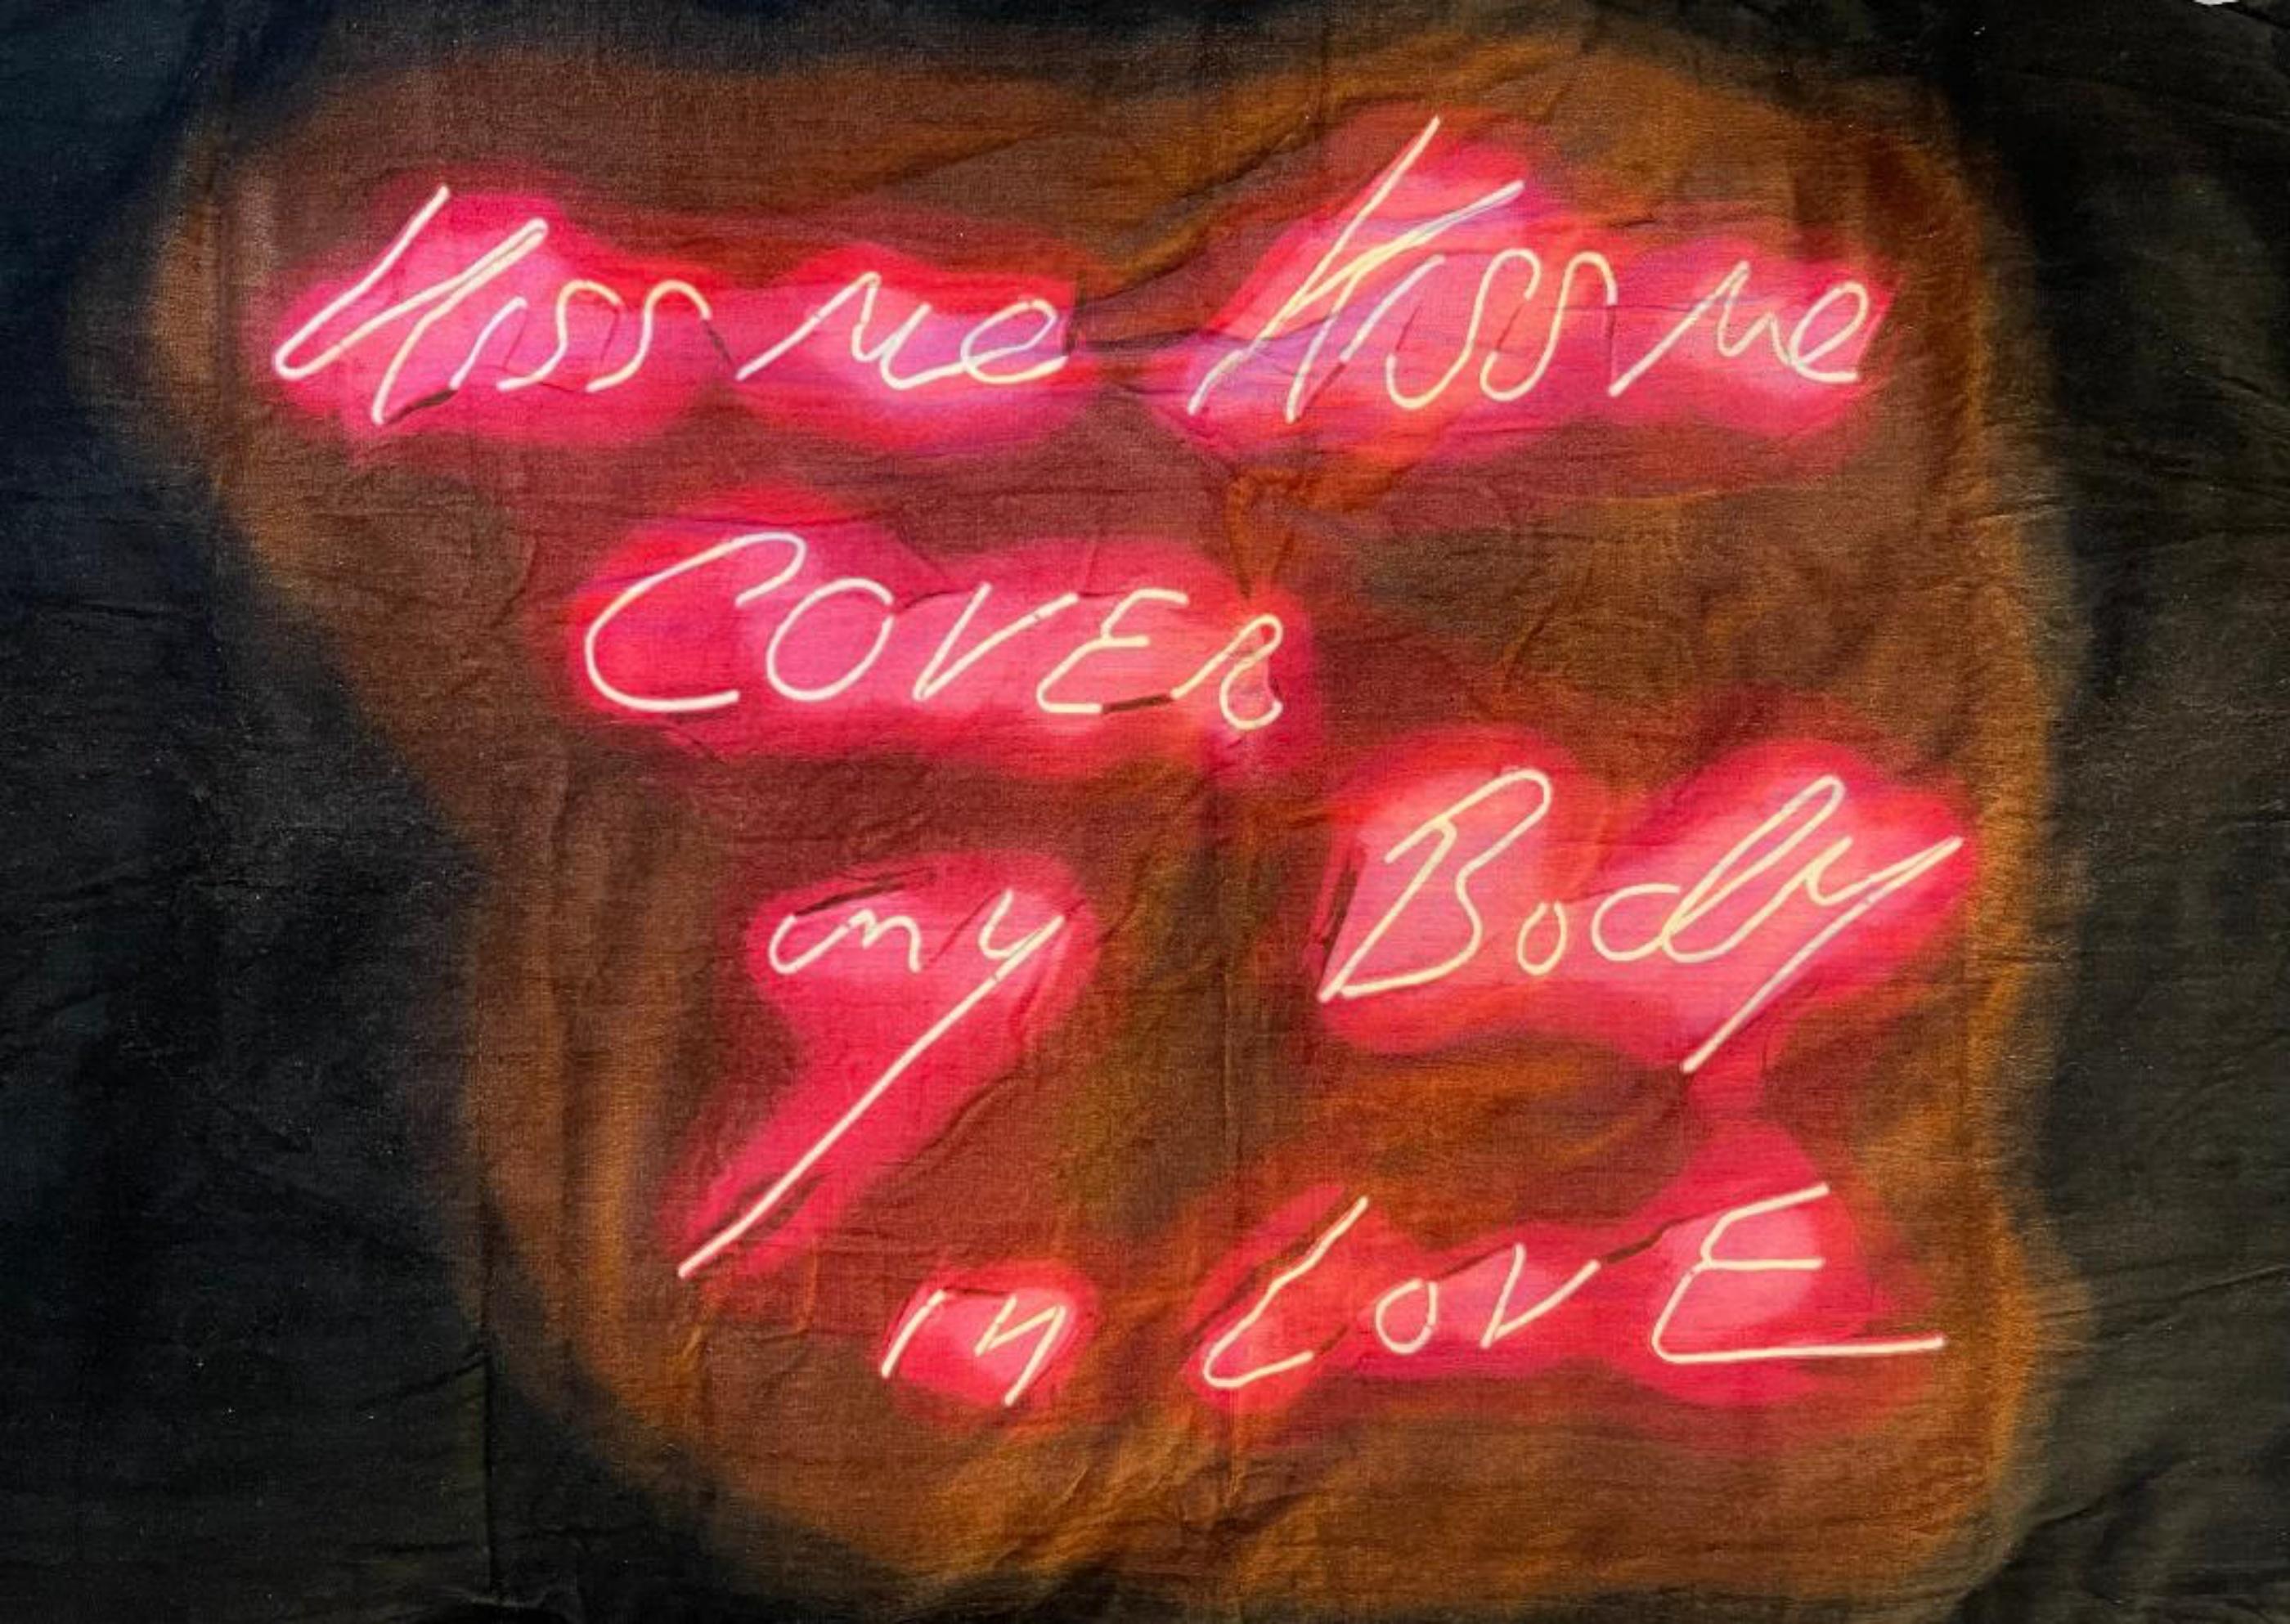 Kiss Me, Kiss Me, Towel (édition limitée, numérotée à la main et enveloppée dans un COA officiel) - Mixed Media Art de Tracey Emin